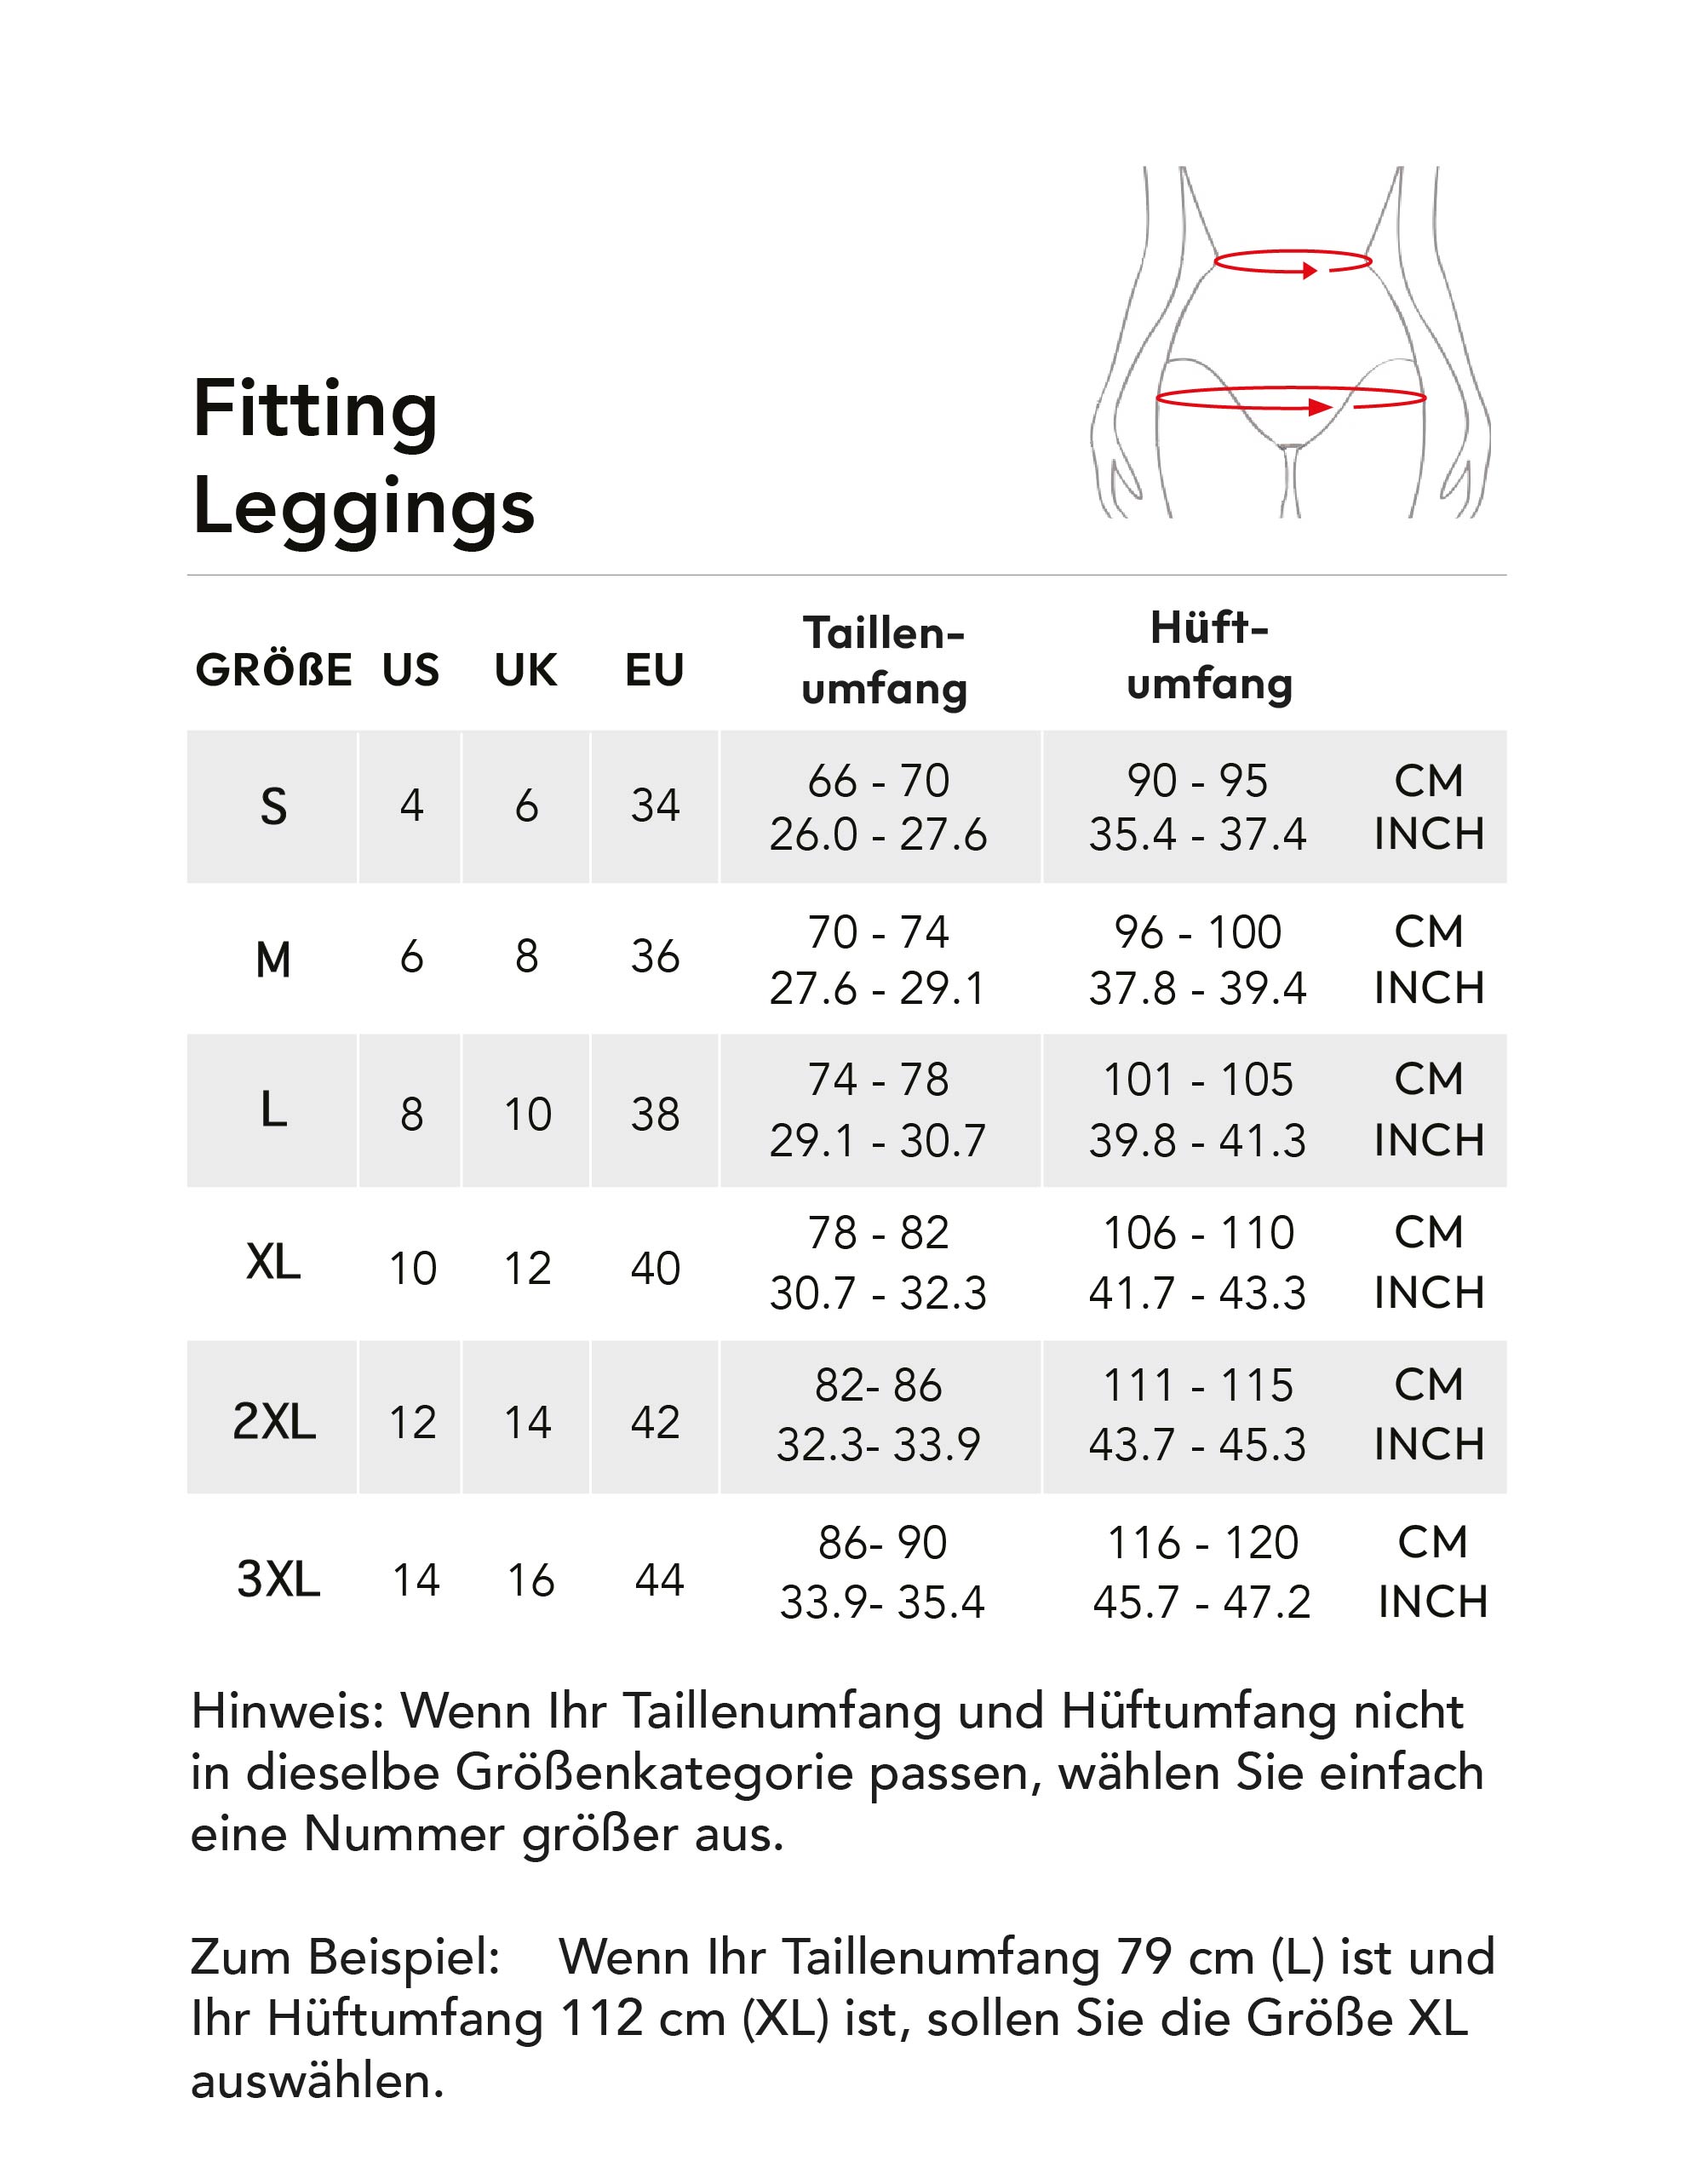 fitting-leggings-7.jpg (302 KB)